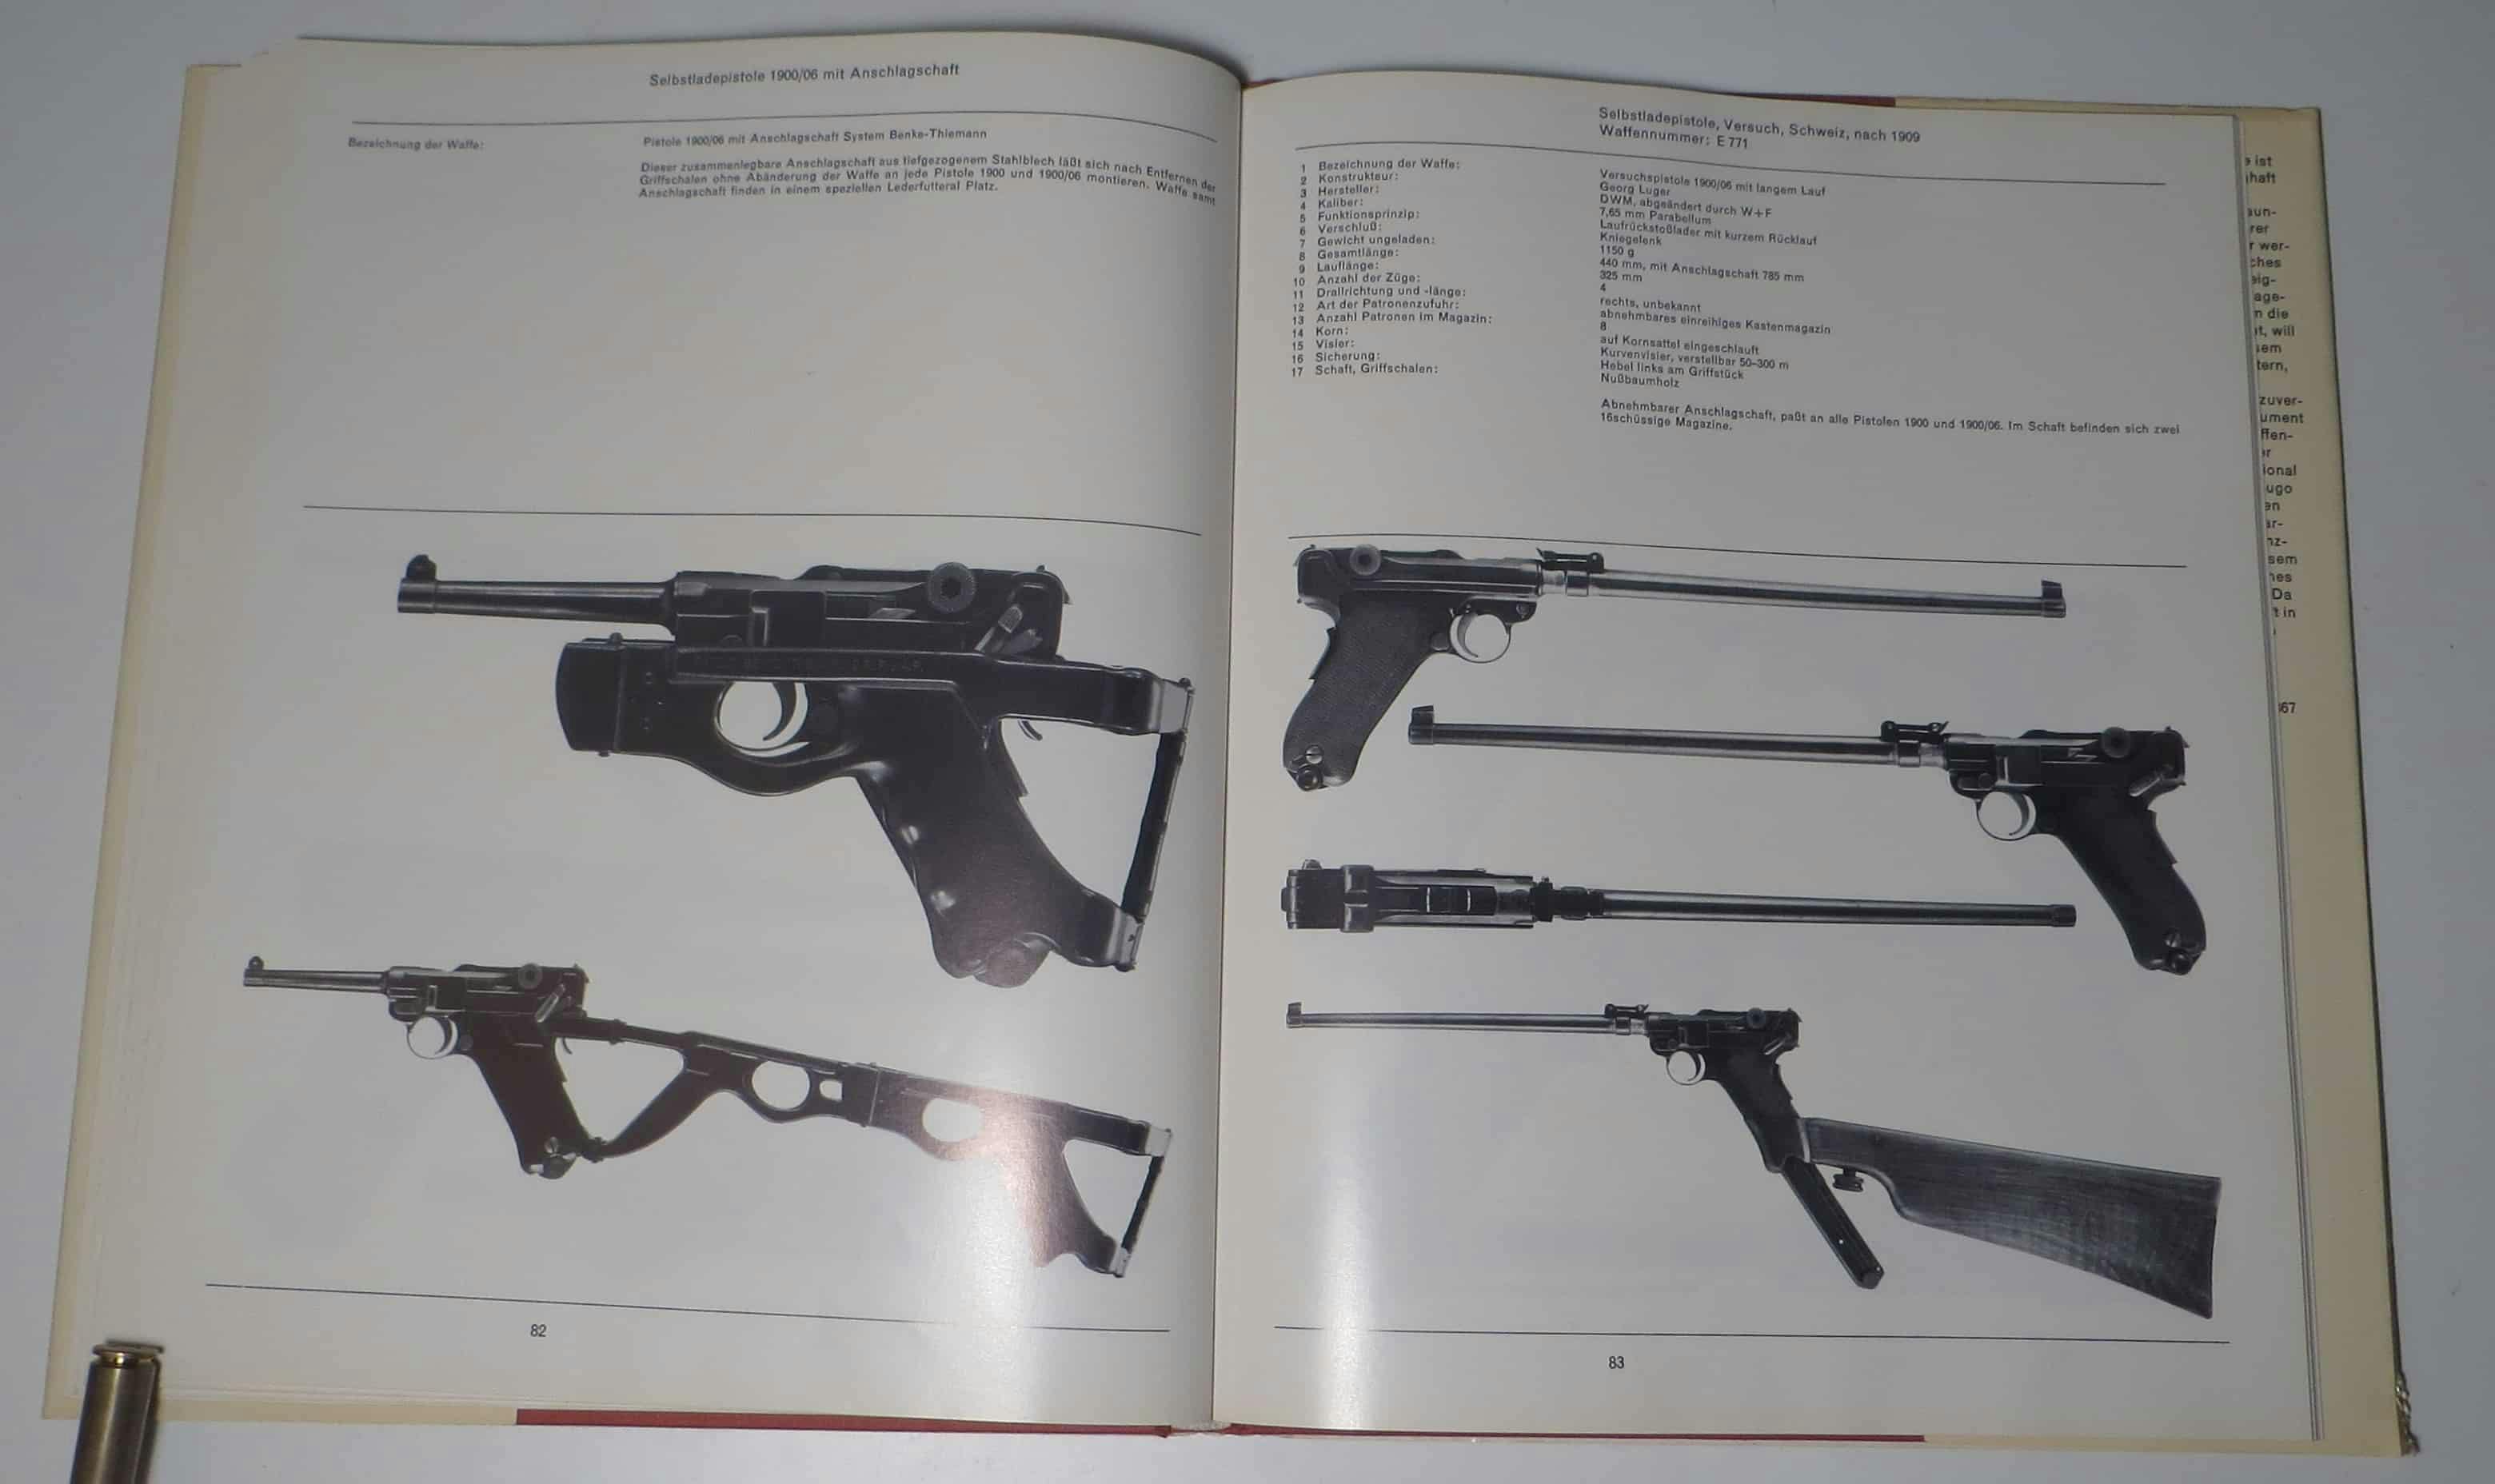 CQB Tactical Folding Stock? Battlefield 1 Konzeptzeichnung? Oder einfach nur ein Anschlagschaft Benke-Thiemann für die Pistole 1900/06. Rechts davon eine mit 325mm langem Lauf ausgestattete Pistole 1900/06 mit 16-Schuss-Magazinen, die im Schaft verstaut werden konnten.